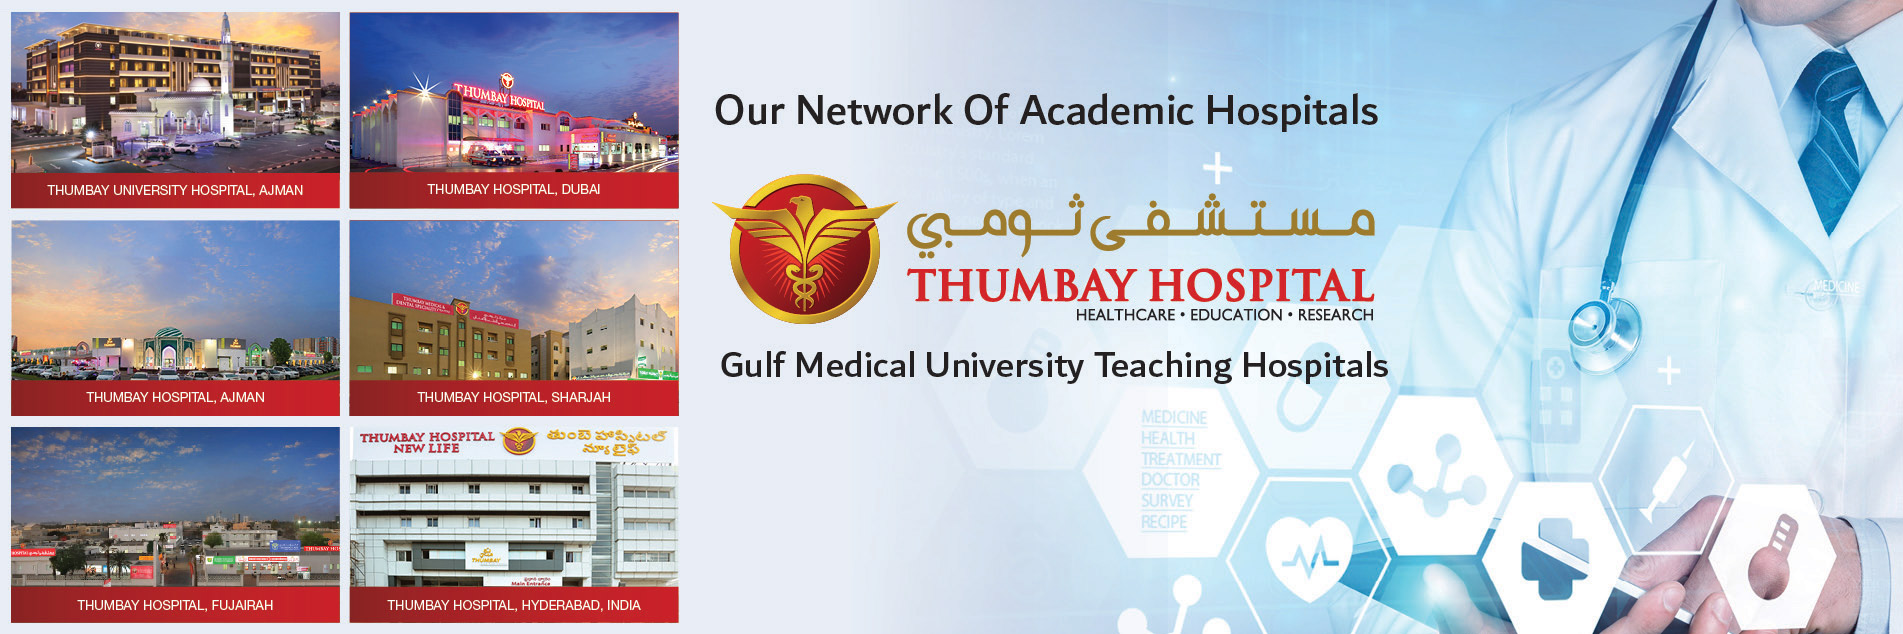 Thumbay Medical Tourism, UAE